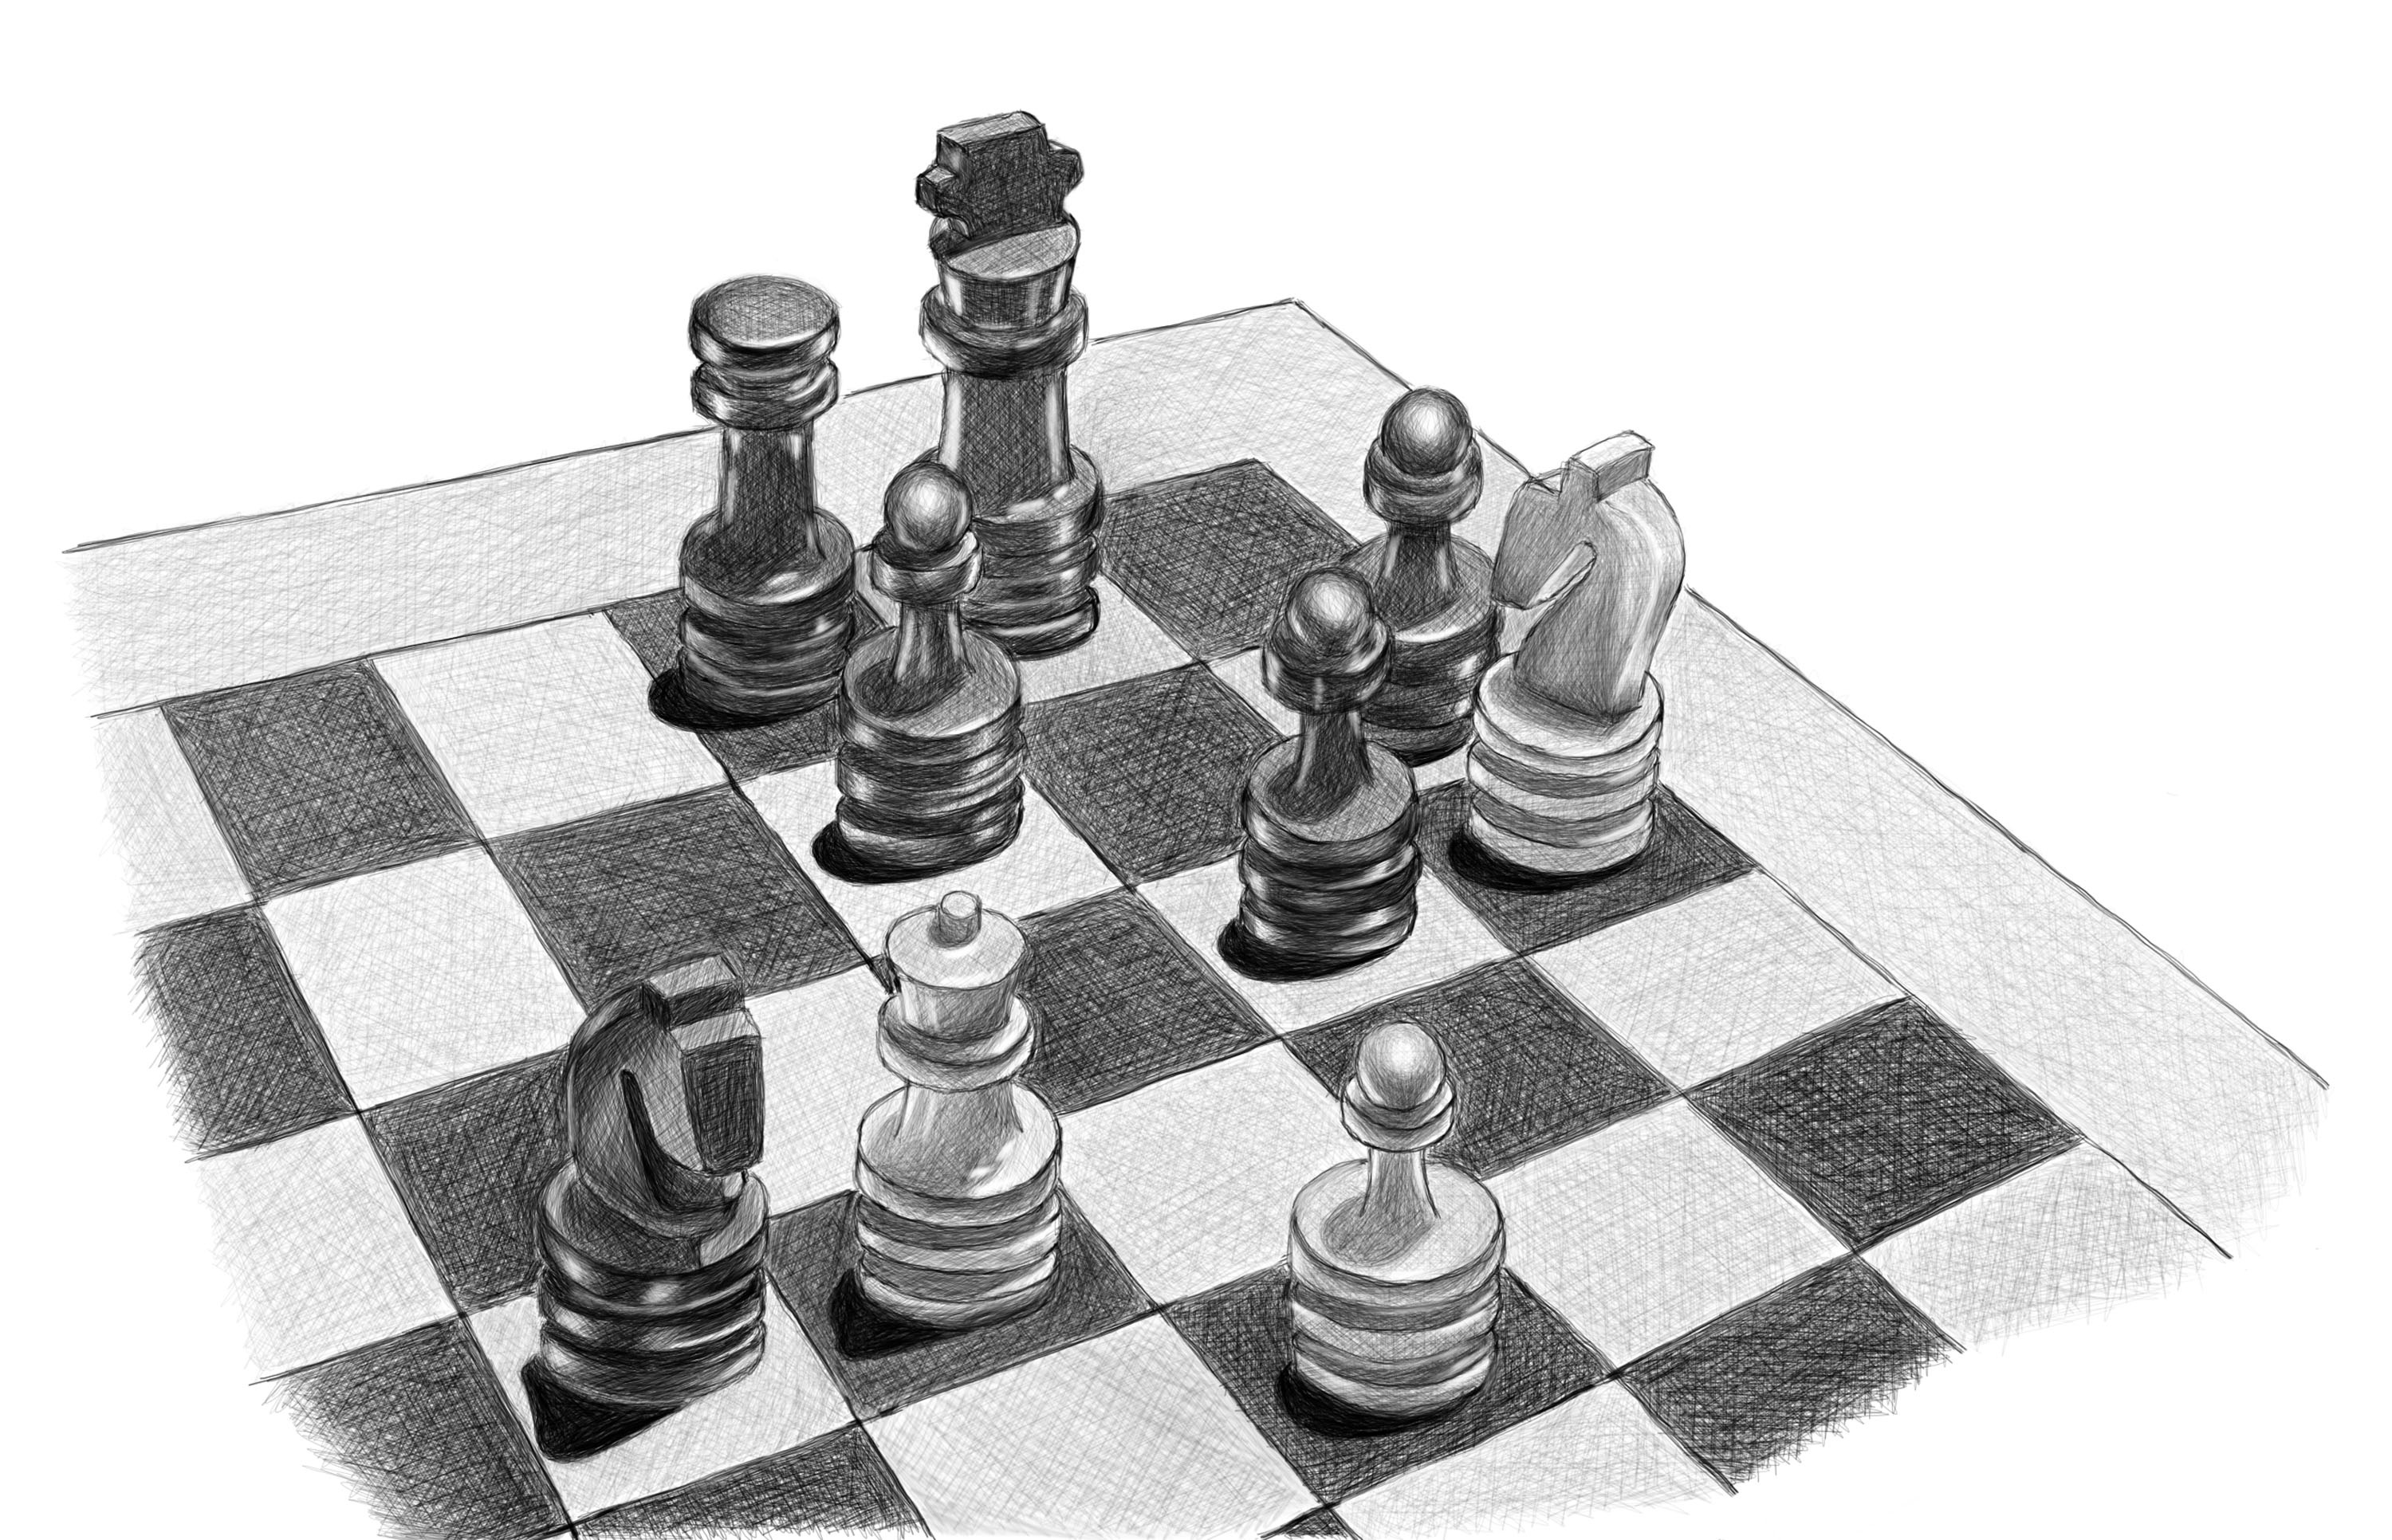 Minor Piece  Chess Terms 